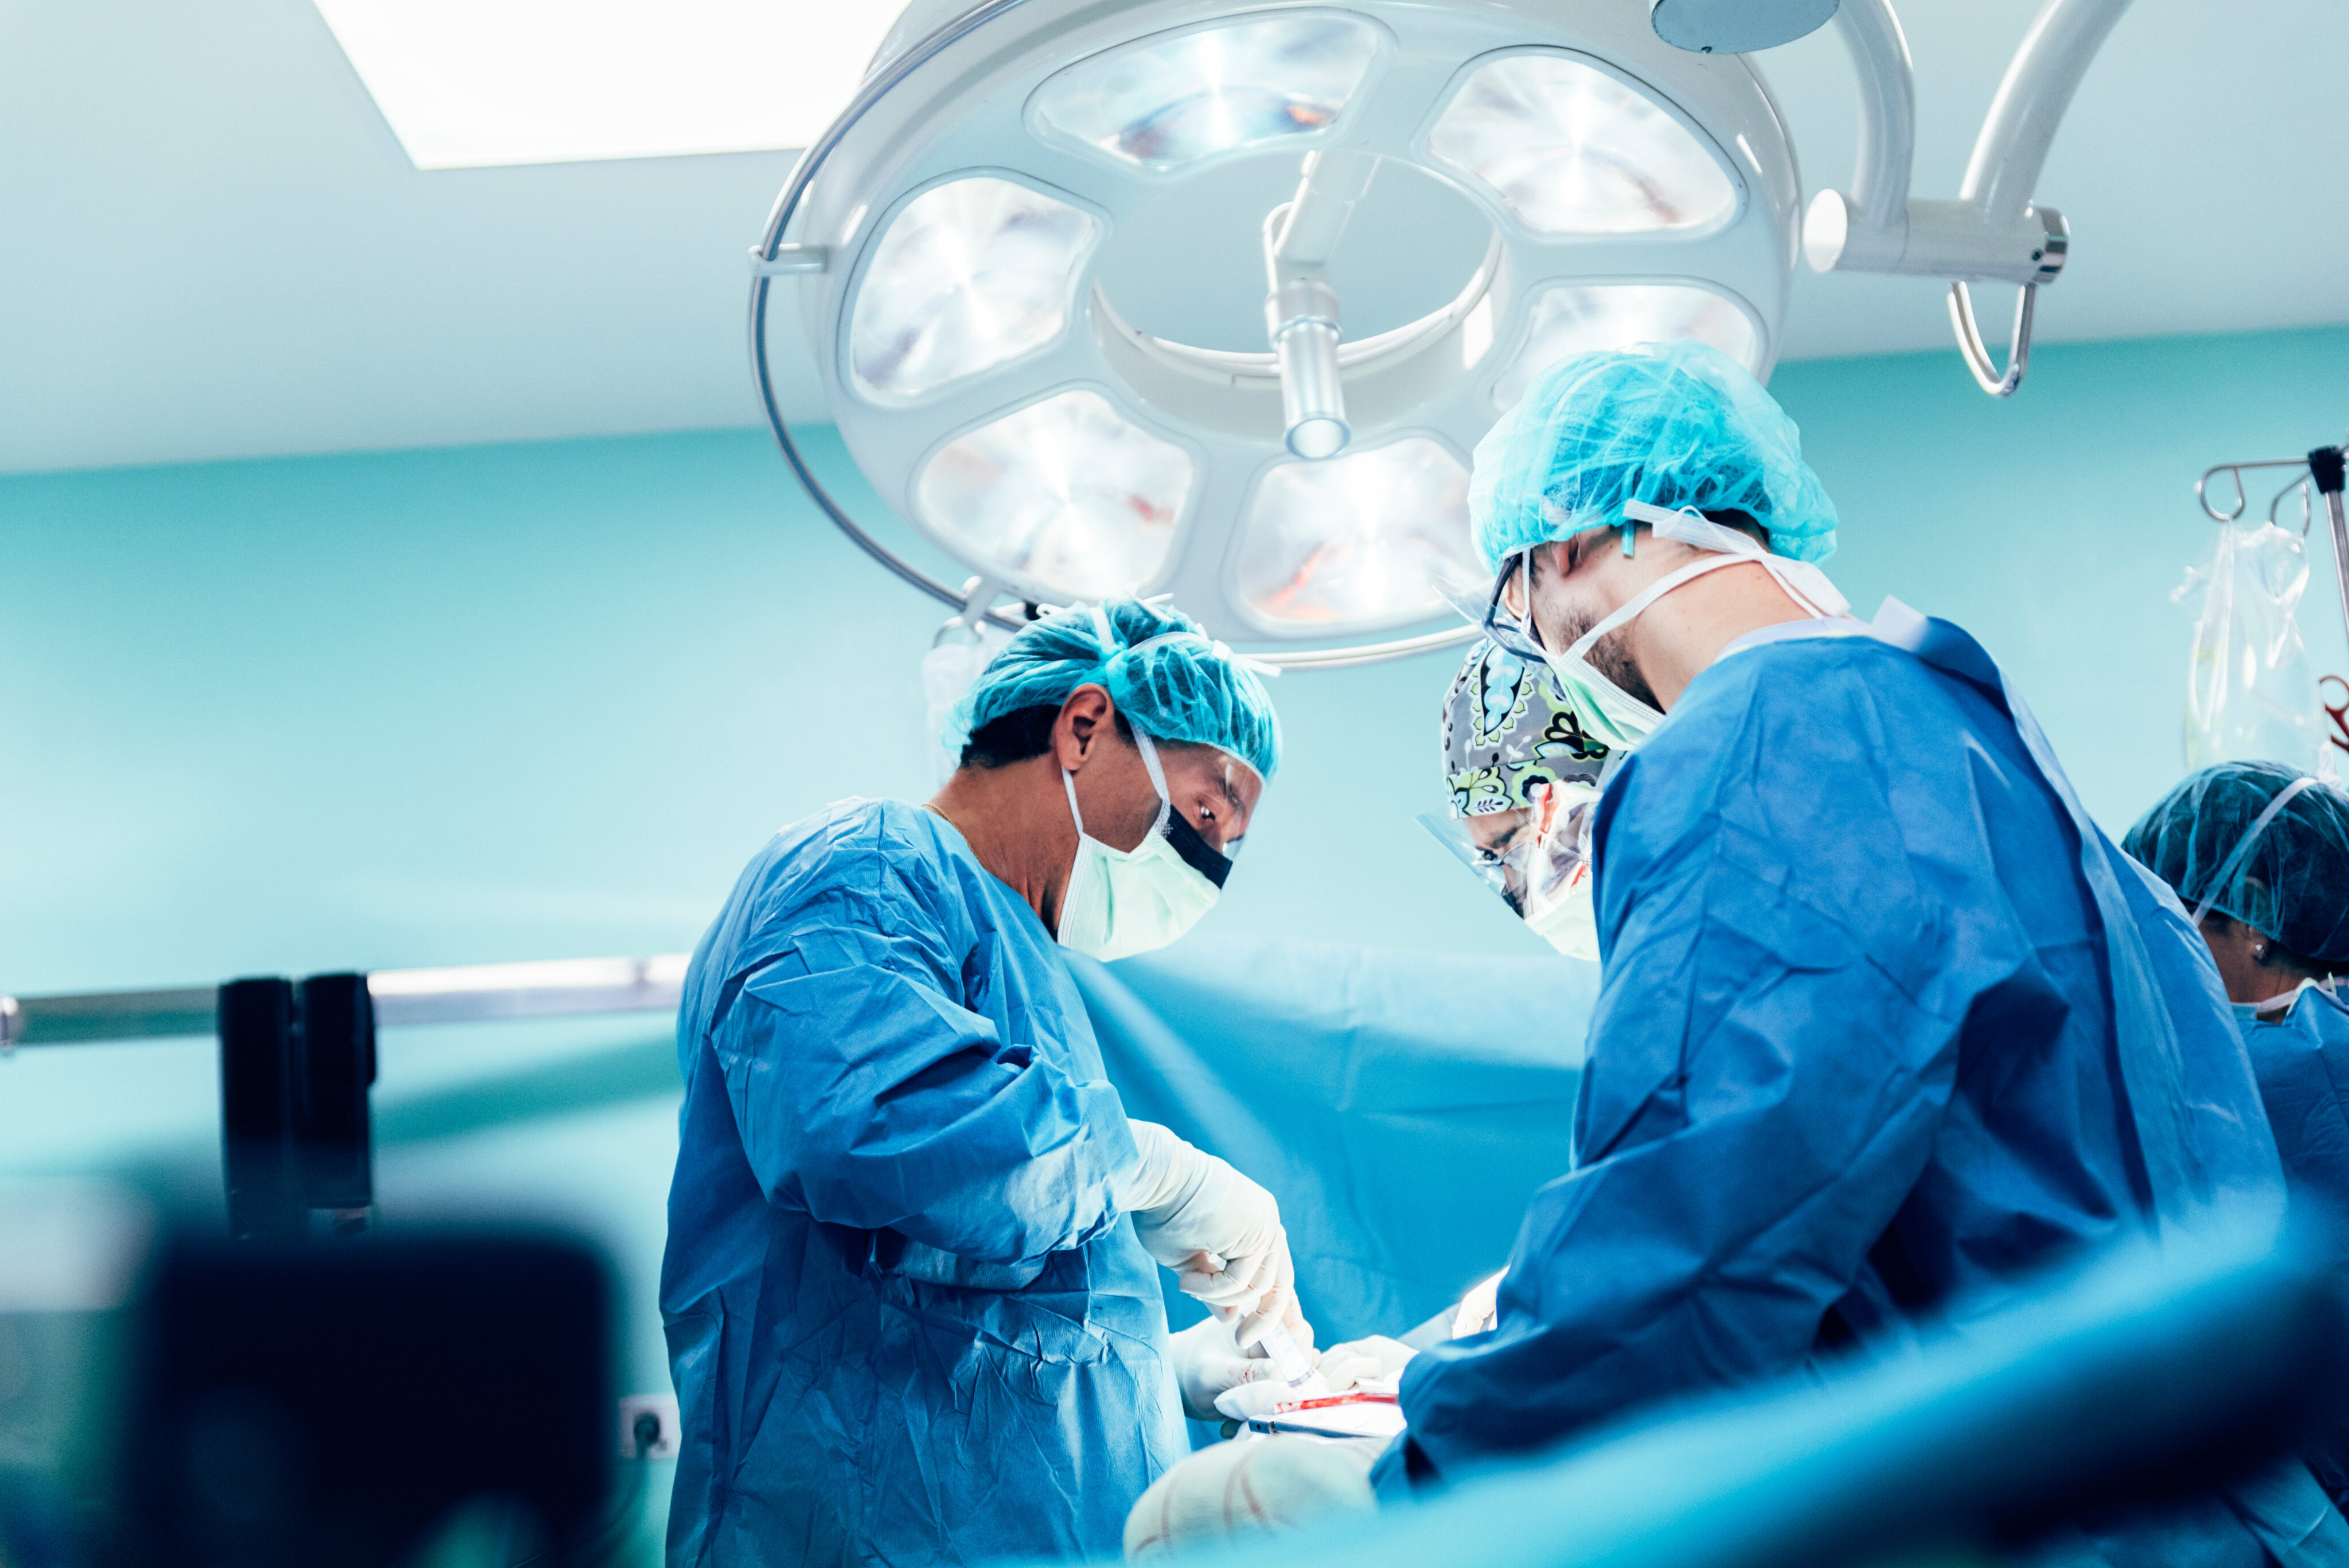 Schweineniere Mensch:Chirurgische Ärzte in blauer Schutzkleidung führen eine Operation durch, unter einem großen OP-Licht in einem Operationssaal."